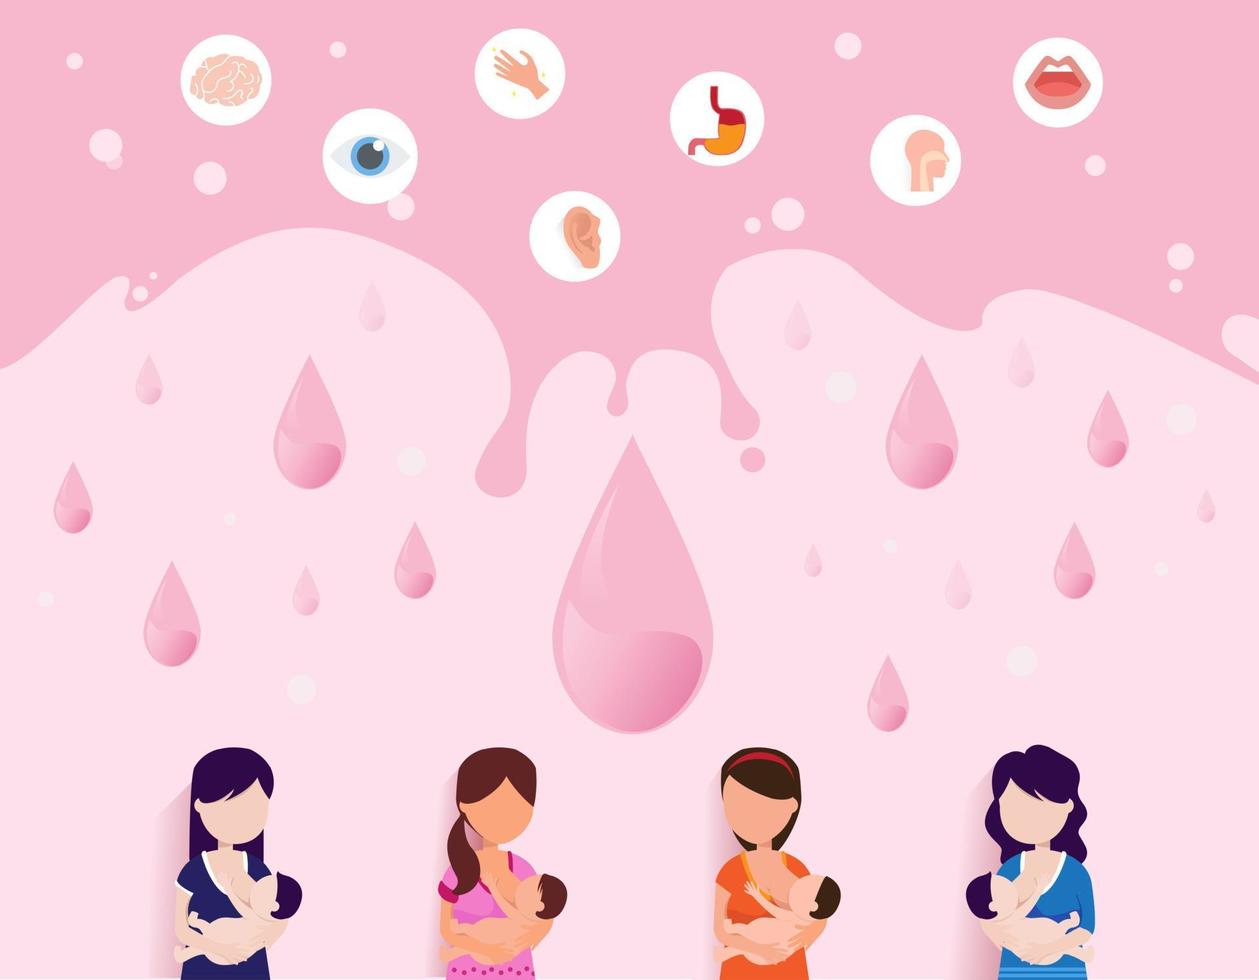 wereld borstvoedingsweek, 1-7 augustus. banner, moederdag illustraties. kind drinkt melk uit de vrouwelijke borst. vector